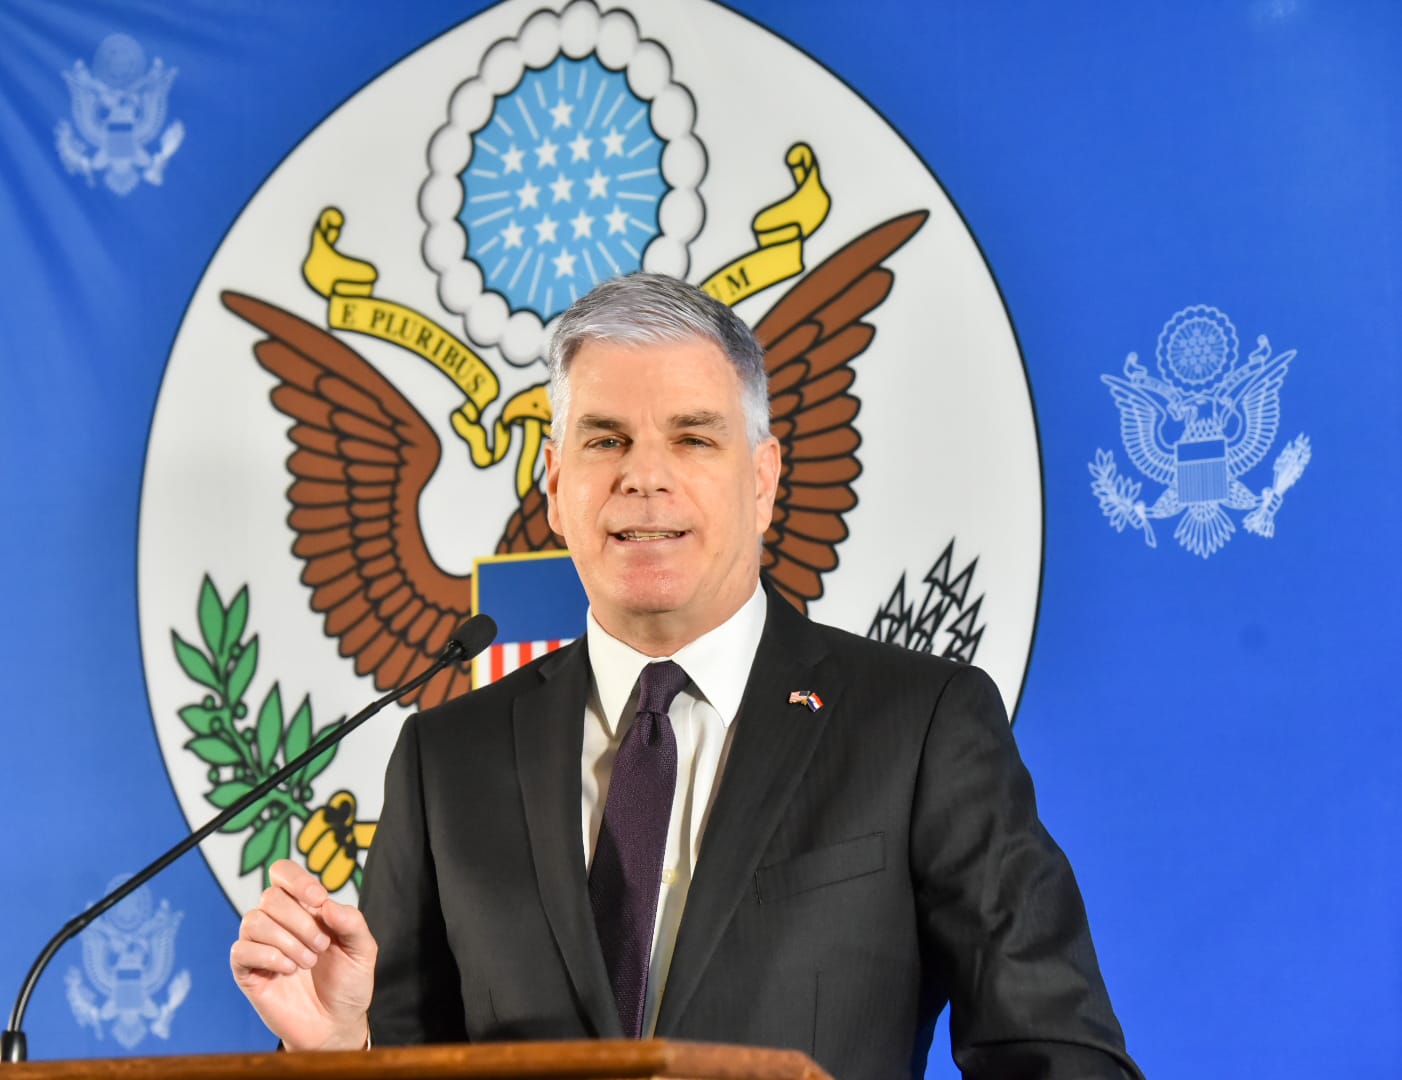 El embajador de Estados Unidos en Paraguay, Marc Ostfield había dicho que las designaciones continuarían.Foto: Twitter